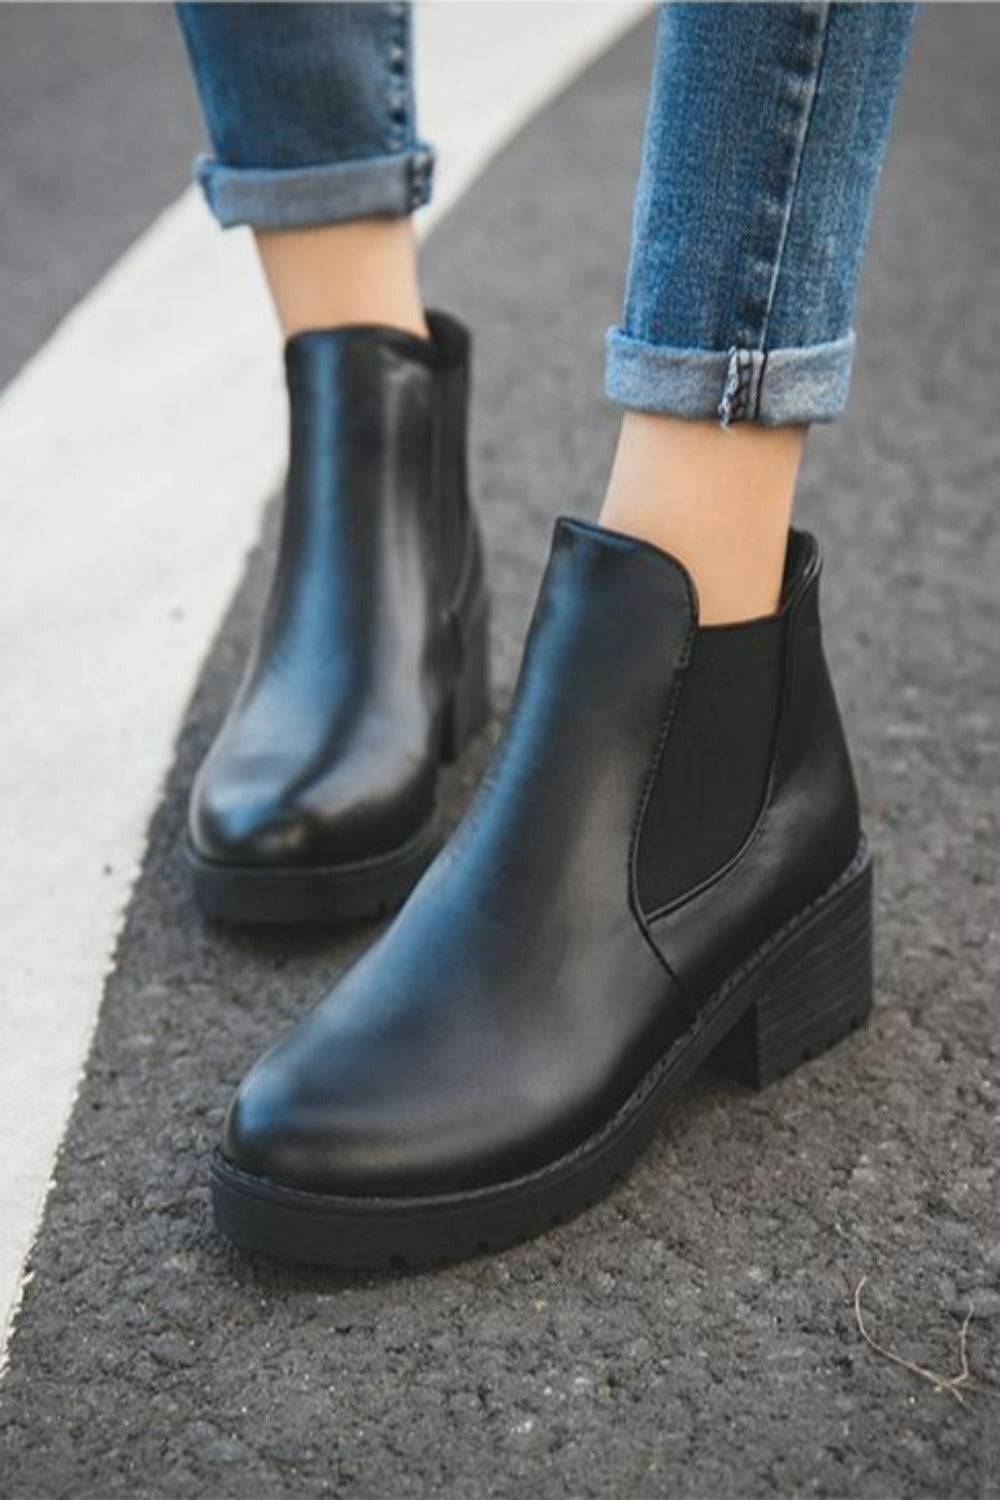 Tamara Black Chelsea Boots - TGC Boutique - Black Ankle Boots